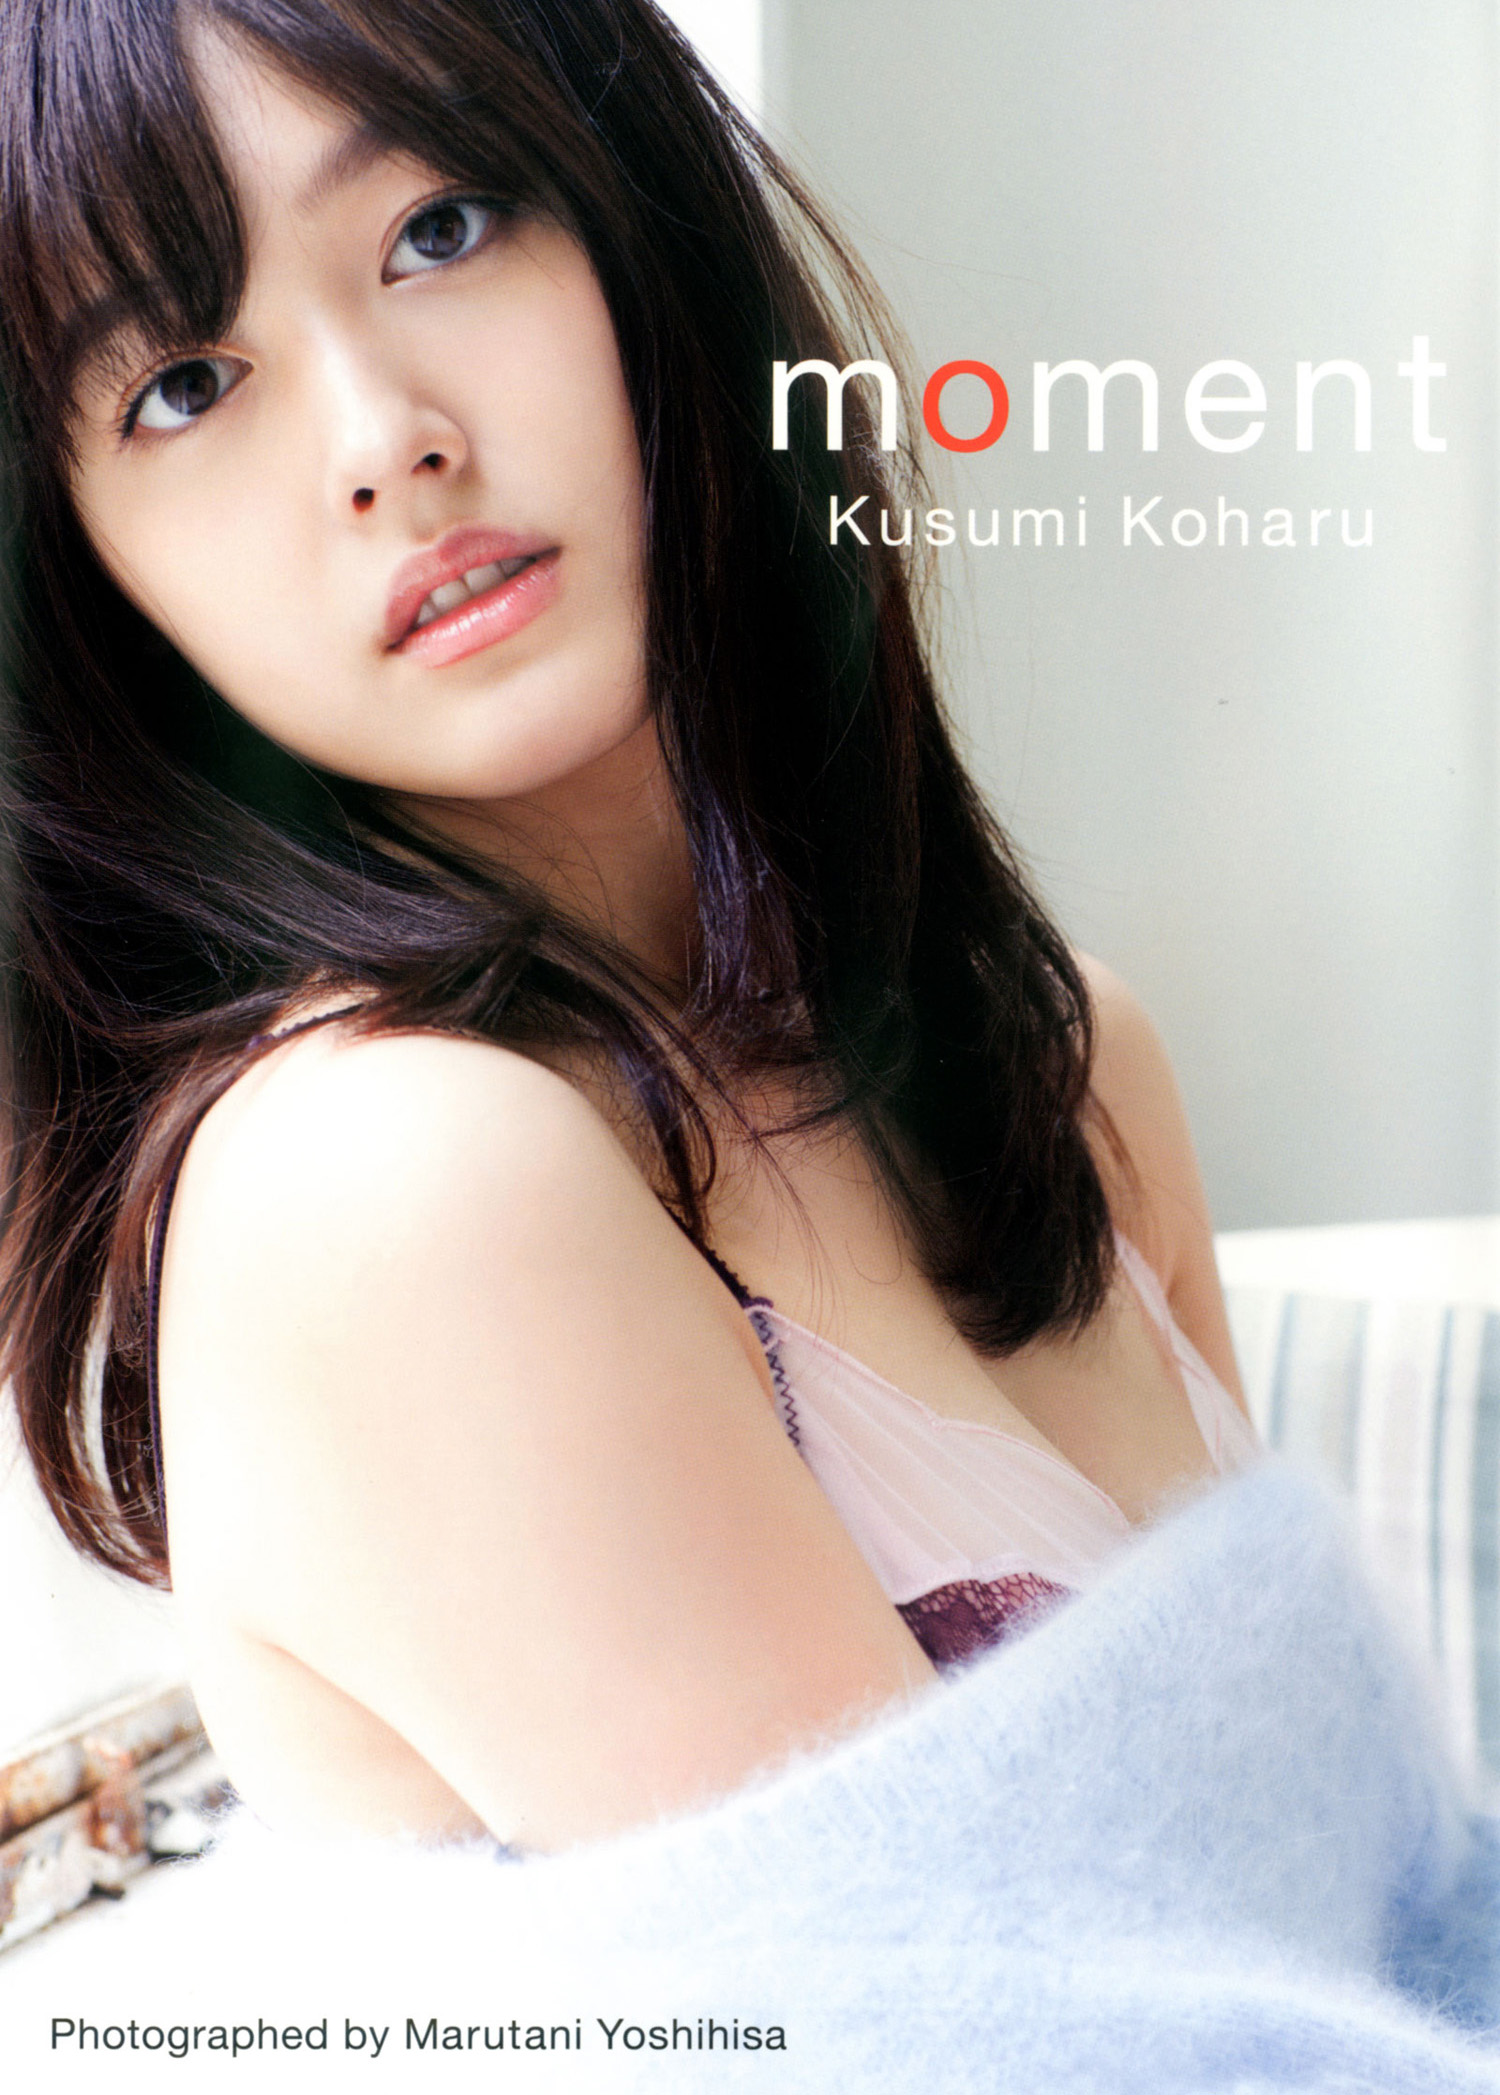 久住小春写真集「moment」(写真集) - 電子書籍 | U-NEXT 初回600円分無料